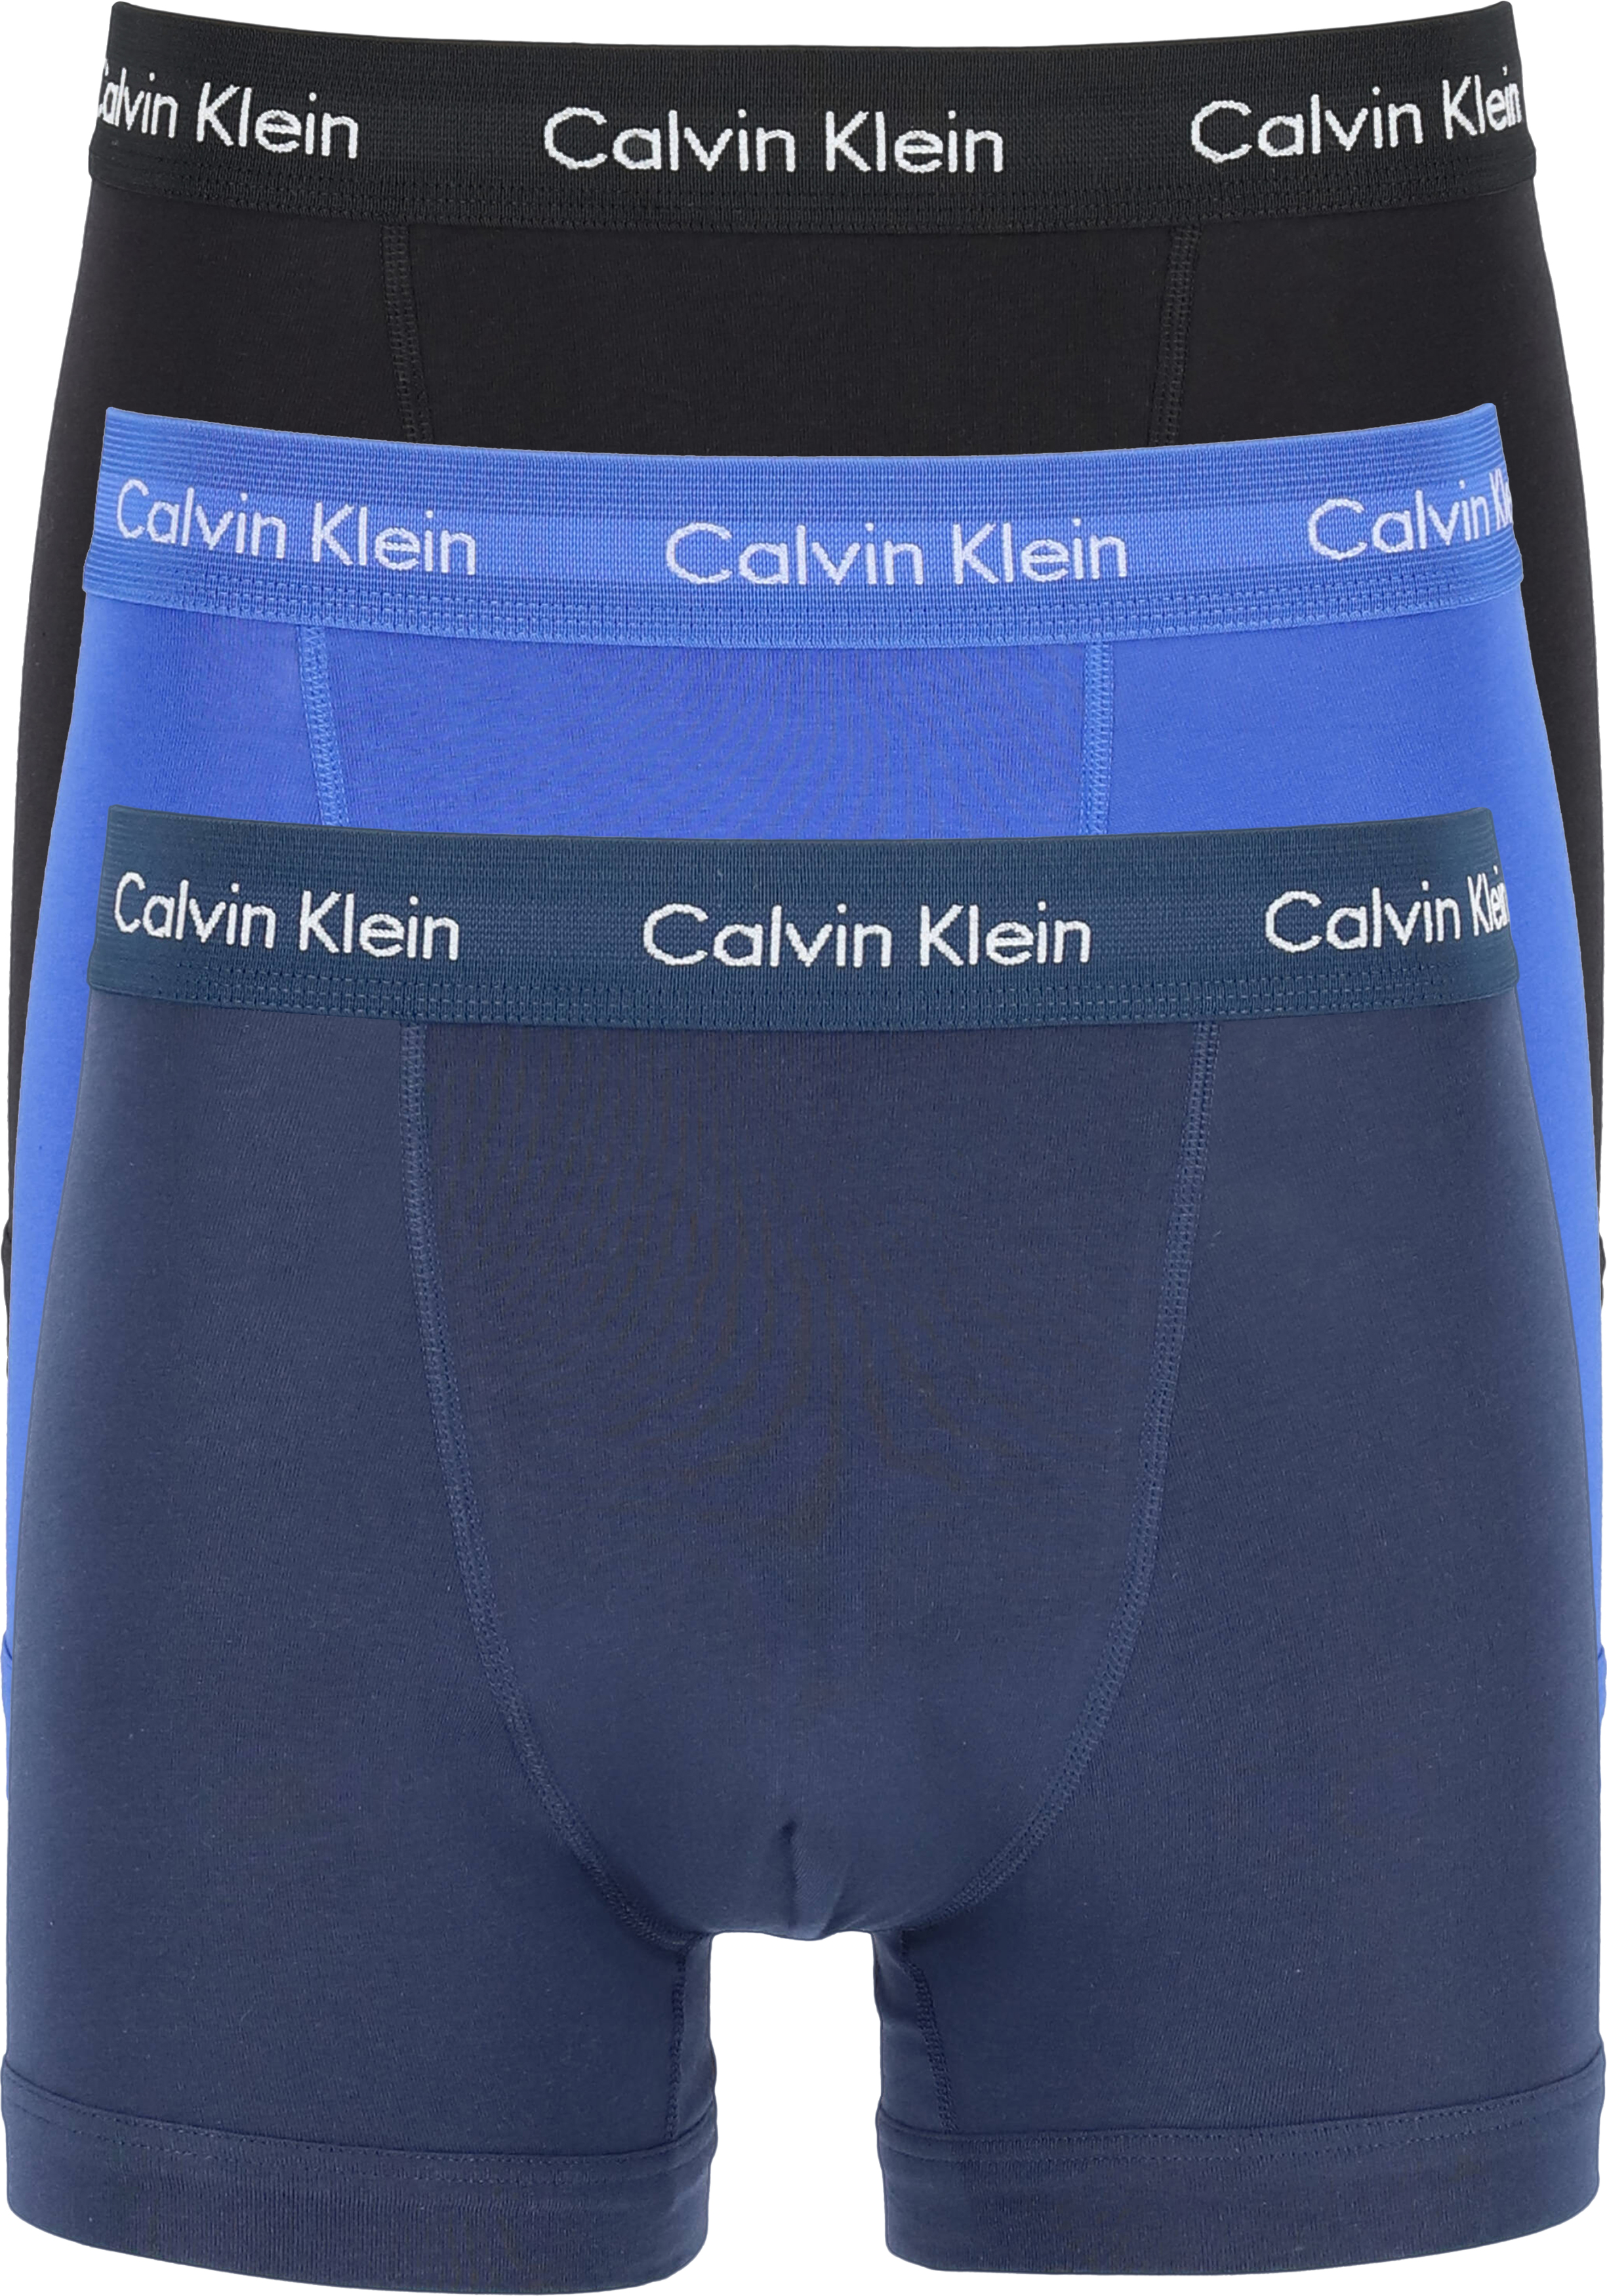 afschaffen shit stropdas Calvin Klein trunks (3-pack), heren boxers normale lengte, kobalt, navy...  - Shop de nieuwste voorjaarsmode